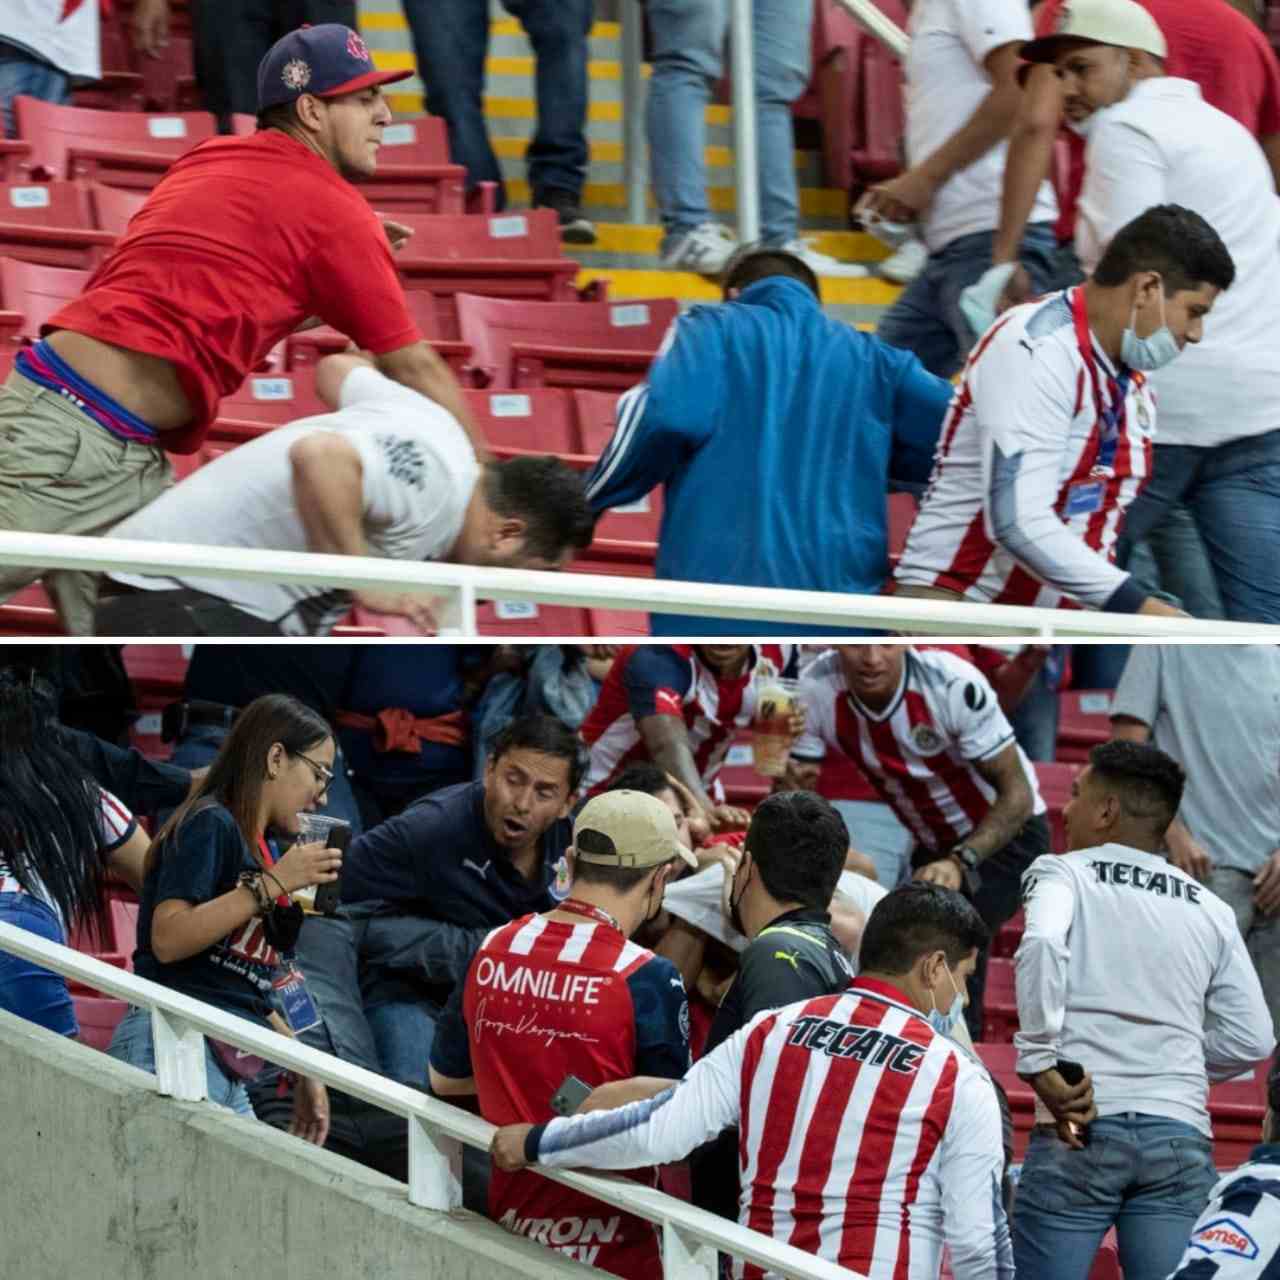 Aficionados implicados en trifulca durante partido de Chivas